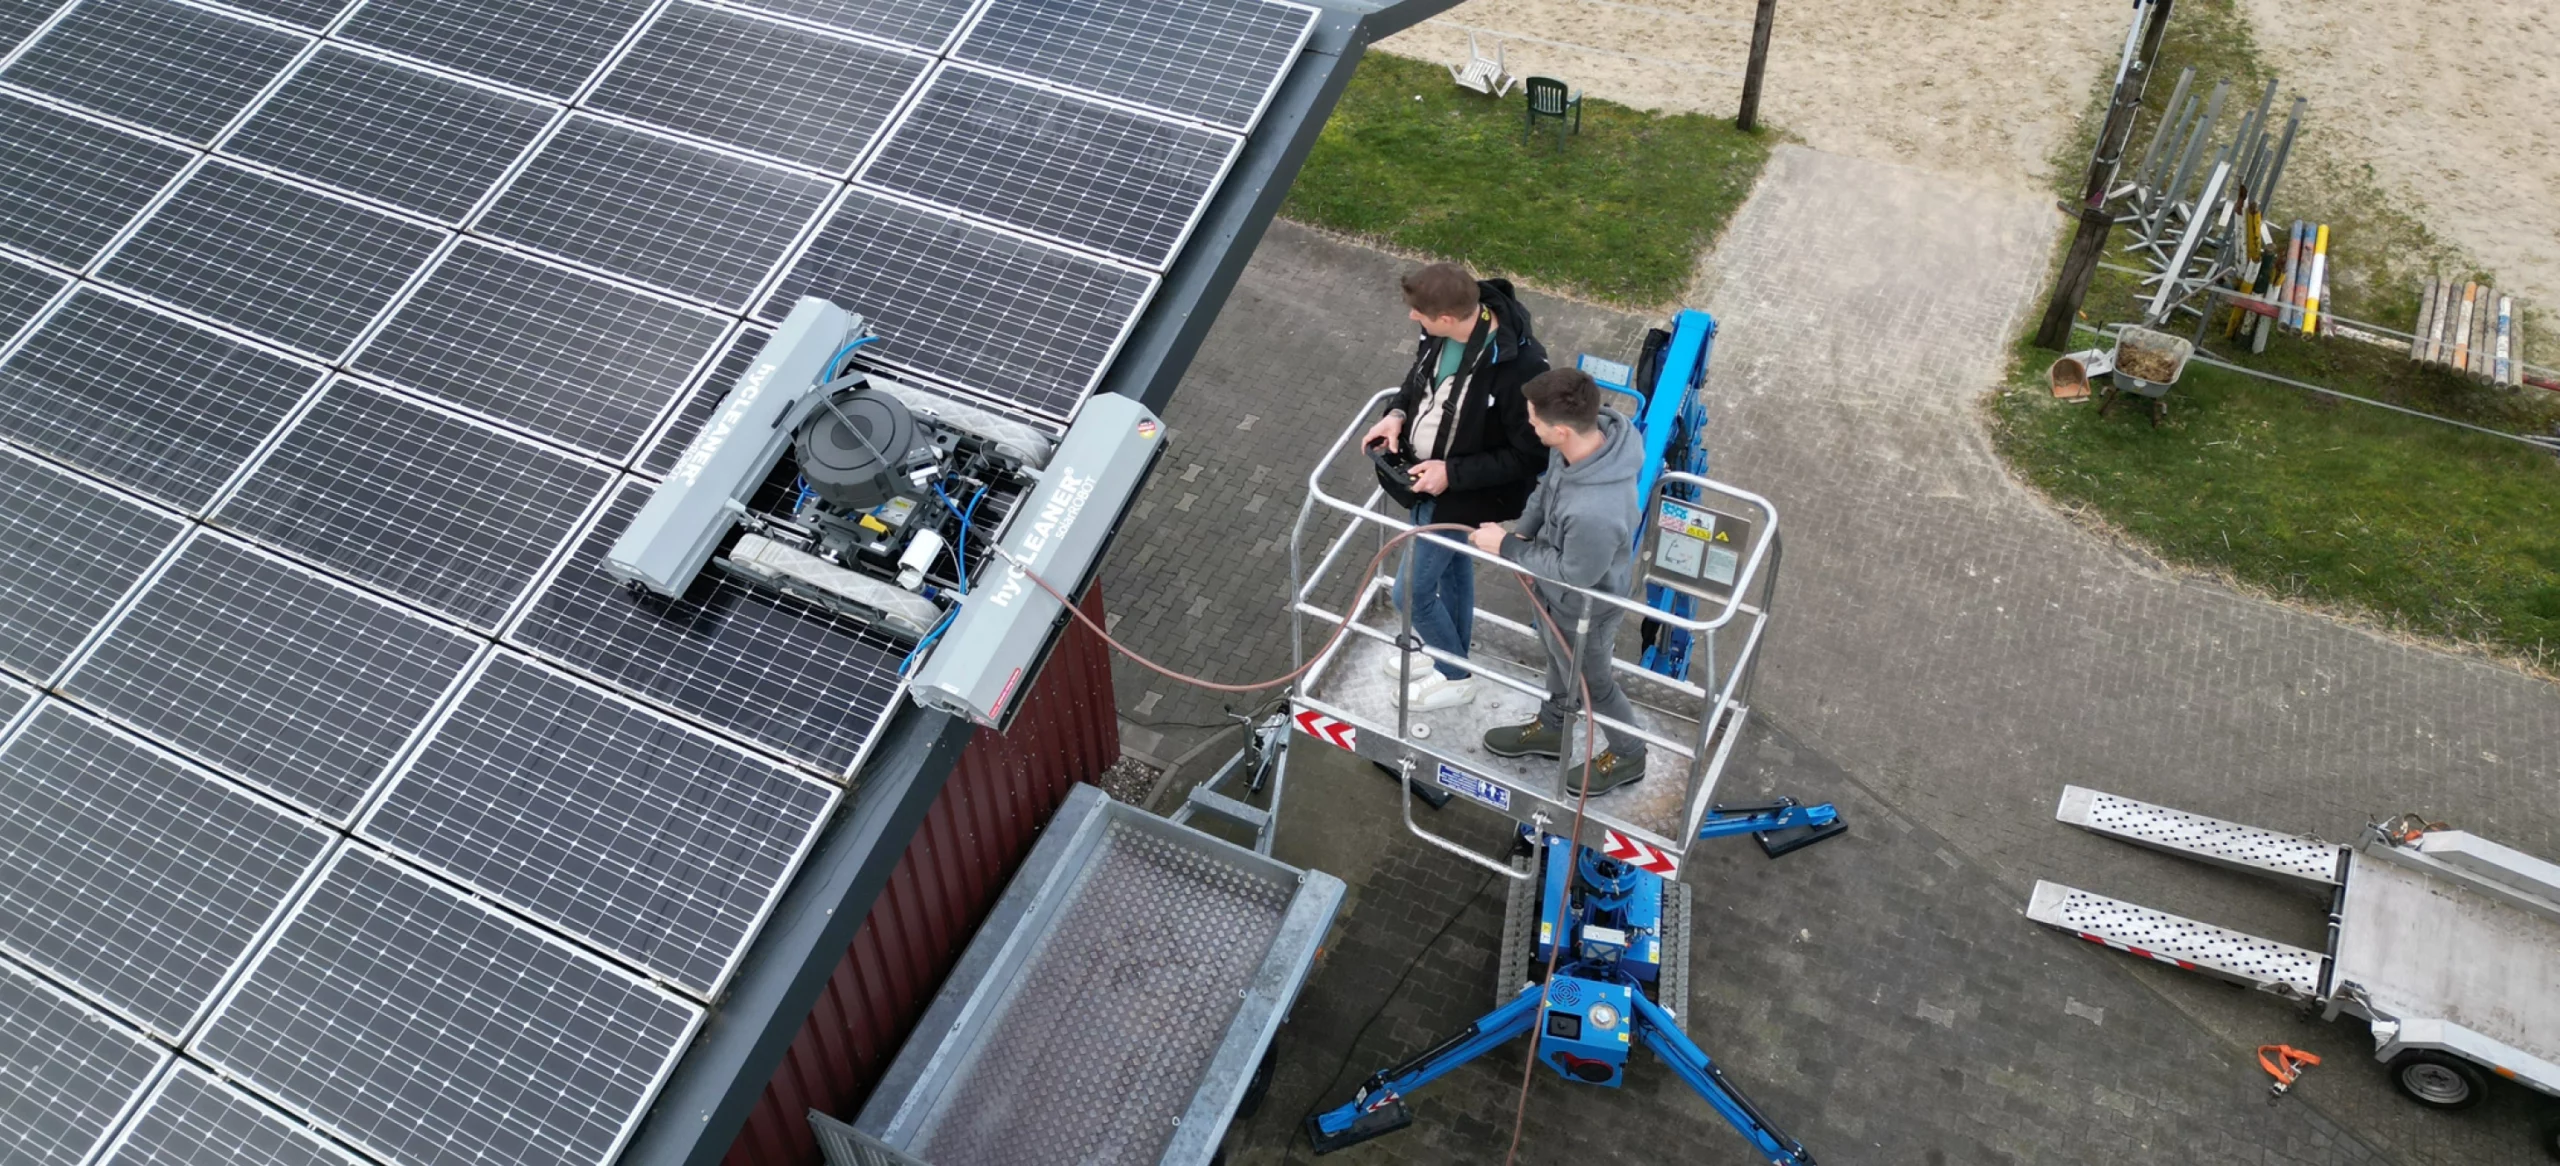 Solaranlage reinigen mit PV Reinigungsroboter solarROBOT von oben